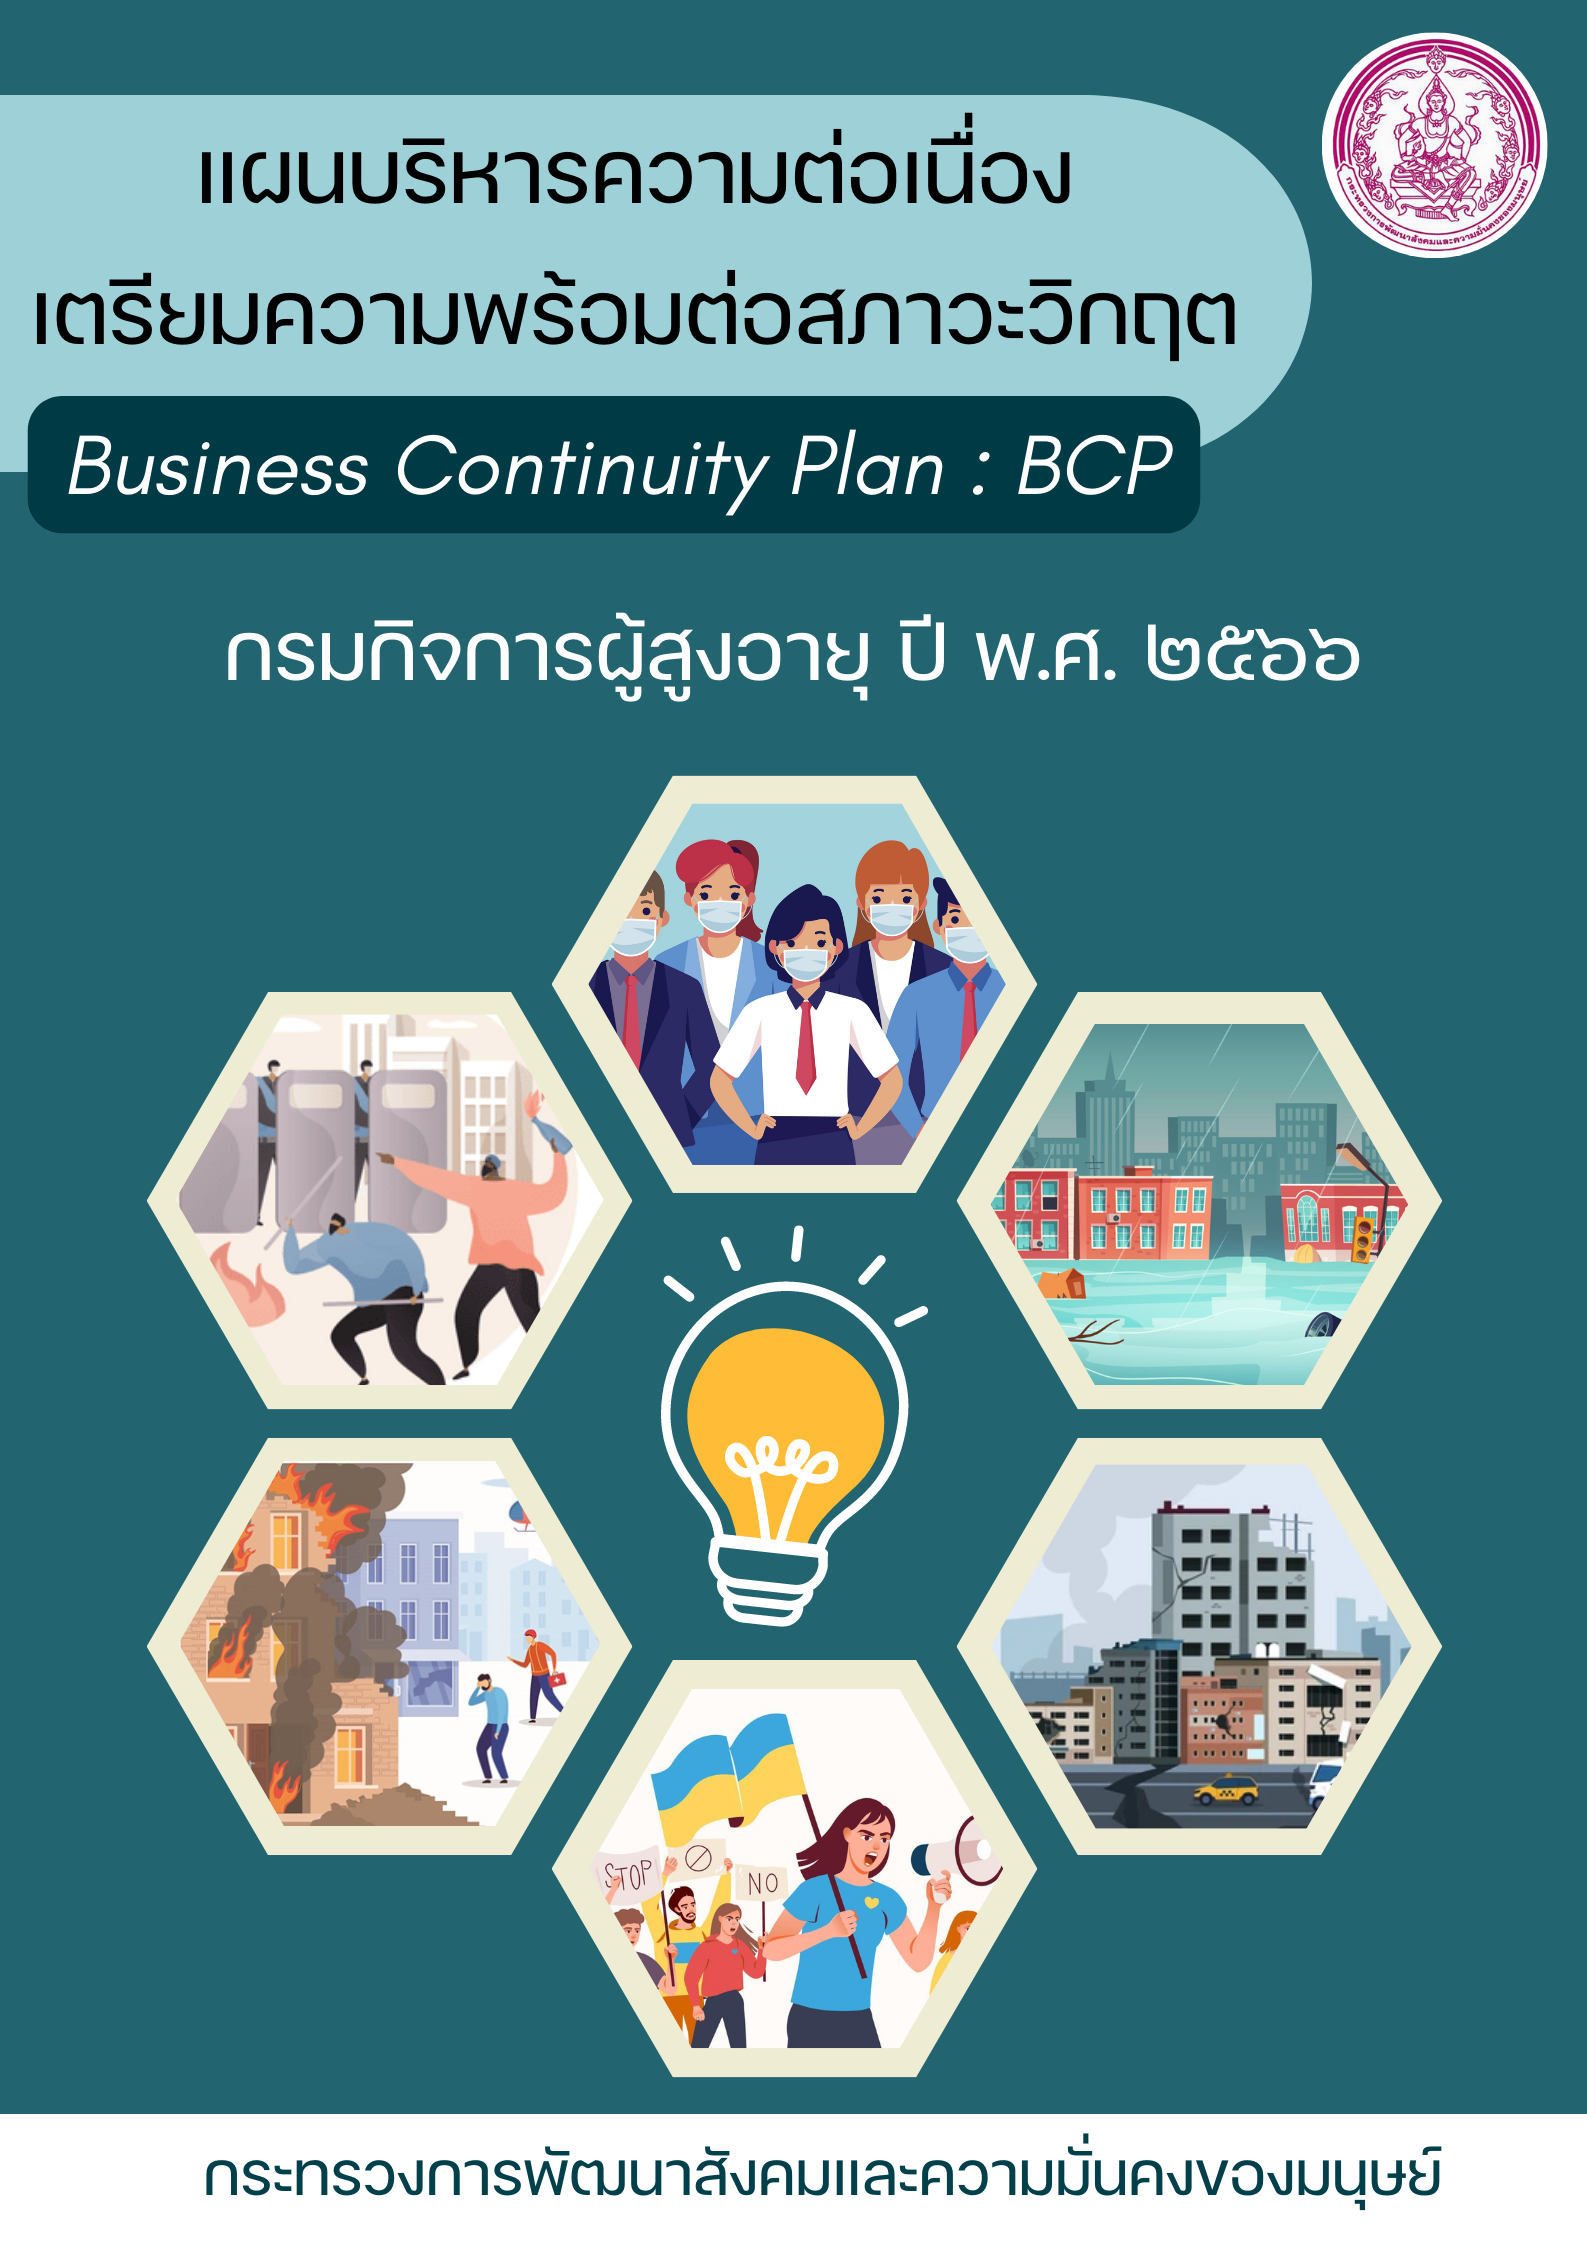 แผนบริหารความต่อเนื่องเตรียมความพร้อมต่อสภาวะวิกฤต (Business Continuity Plan : BCP)  